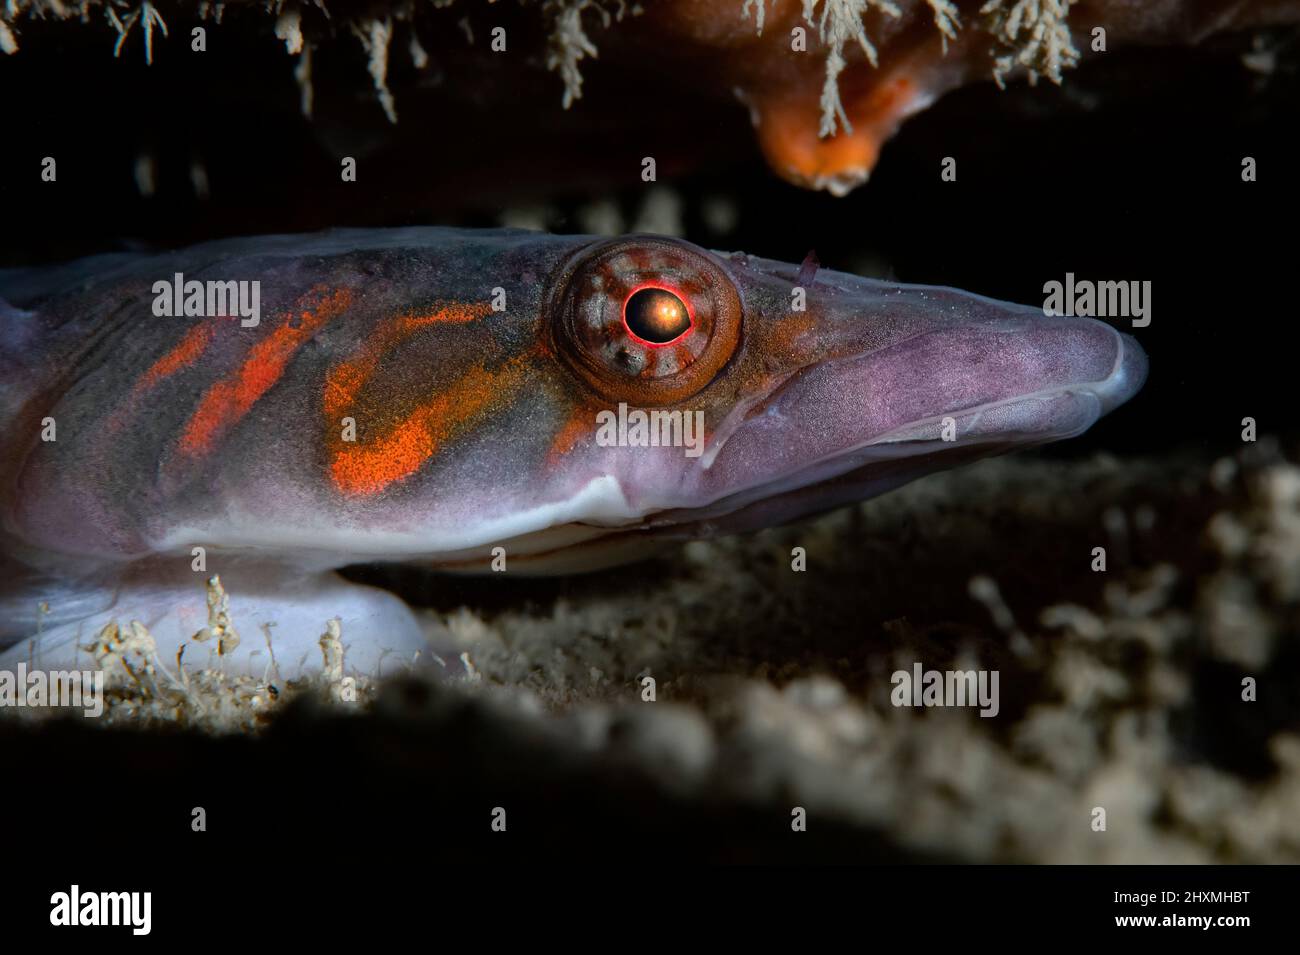 Lepadogaster candolii clingfish, Numana, Italy Stock Photo